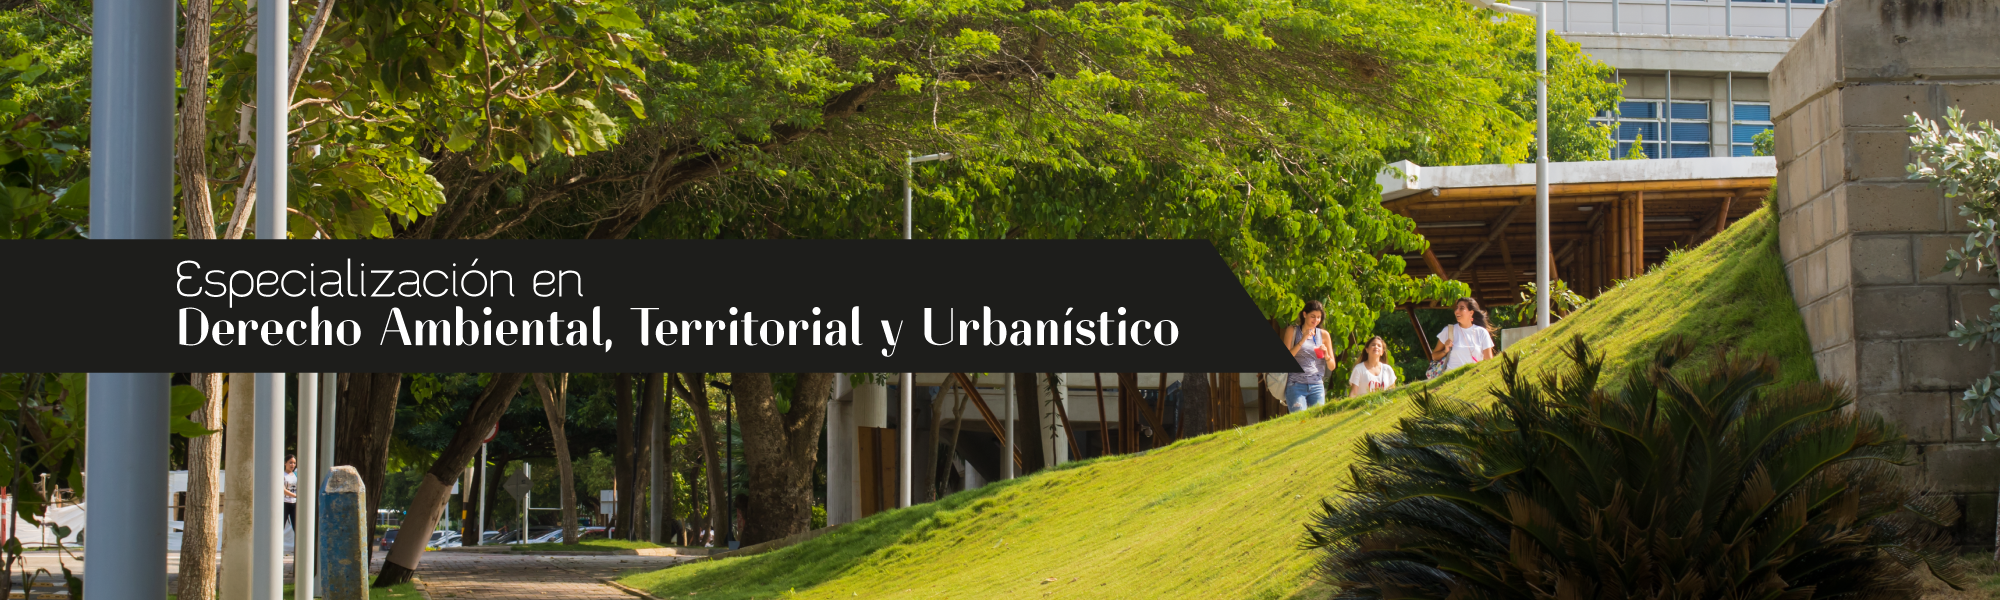 Especialización en Derecho Ambiental, Territorial y Urbanismo